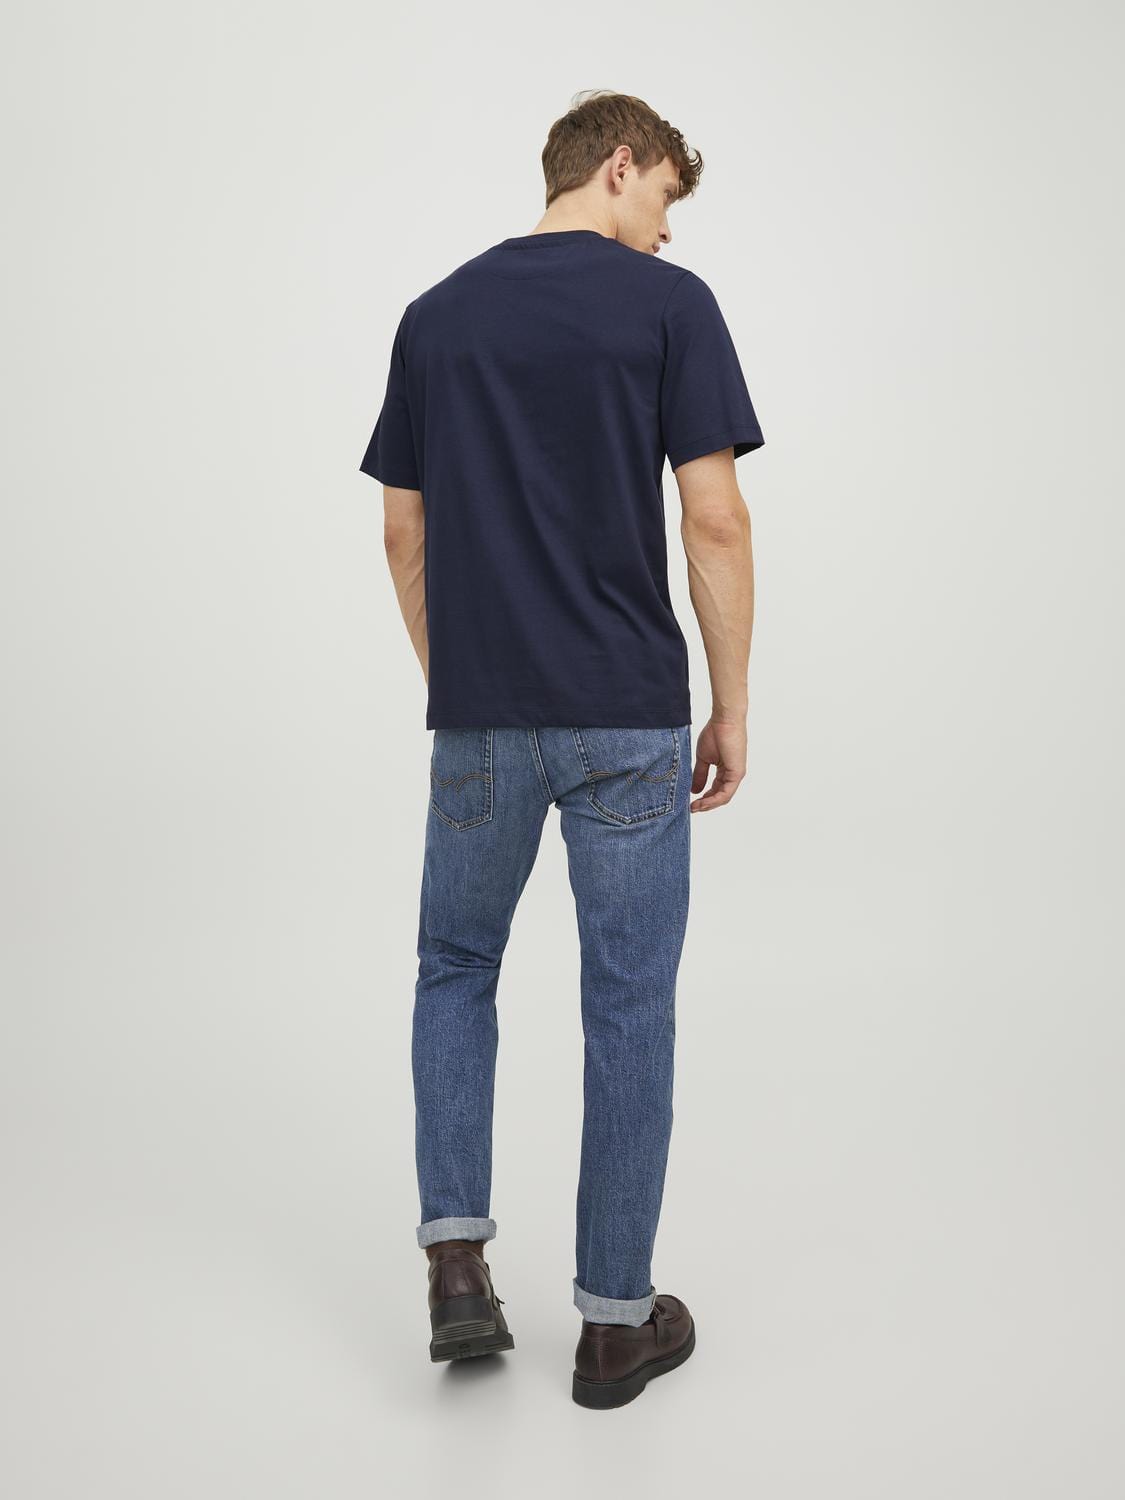 Camiseta manga corta azul con logo -JPRBLUSHIELD